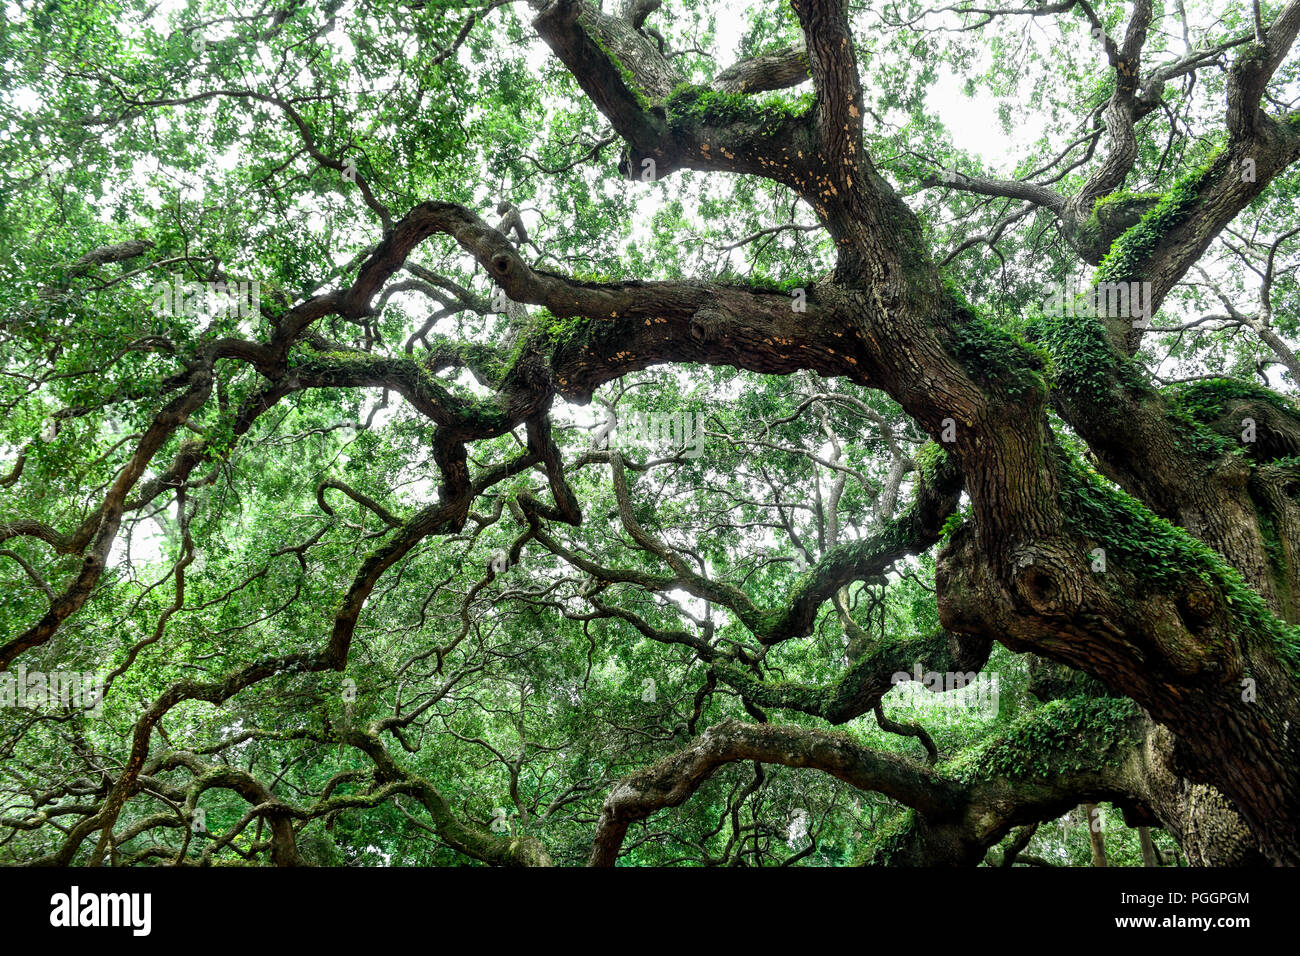 Engel Eiche - einer der ältesten Bäume in den Vereinigten Staaten - dem Südlichen live oak tree auf Johns Island in South Carolina Stockfoto